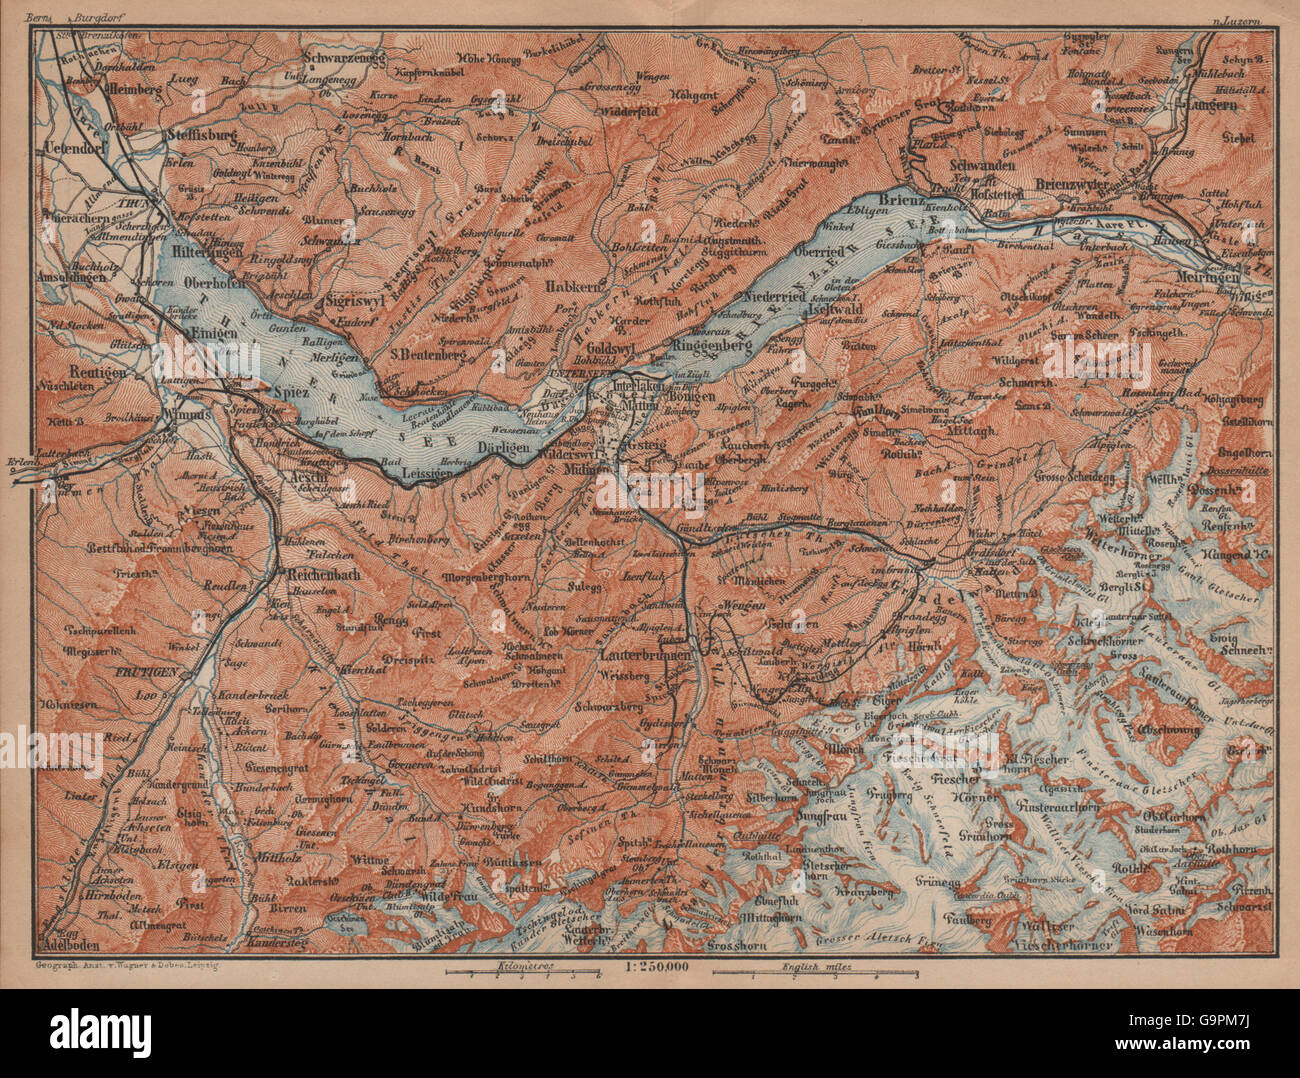 BERNESE OBERLAND. Wengen Mürren Grundelwald Reutigen Interlaken Eiger, 1901 map Stock Photo